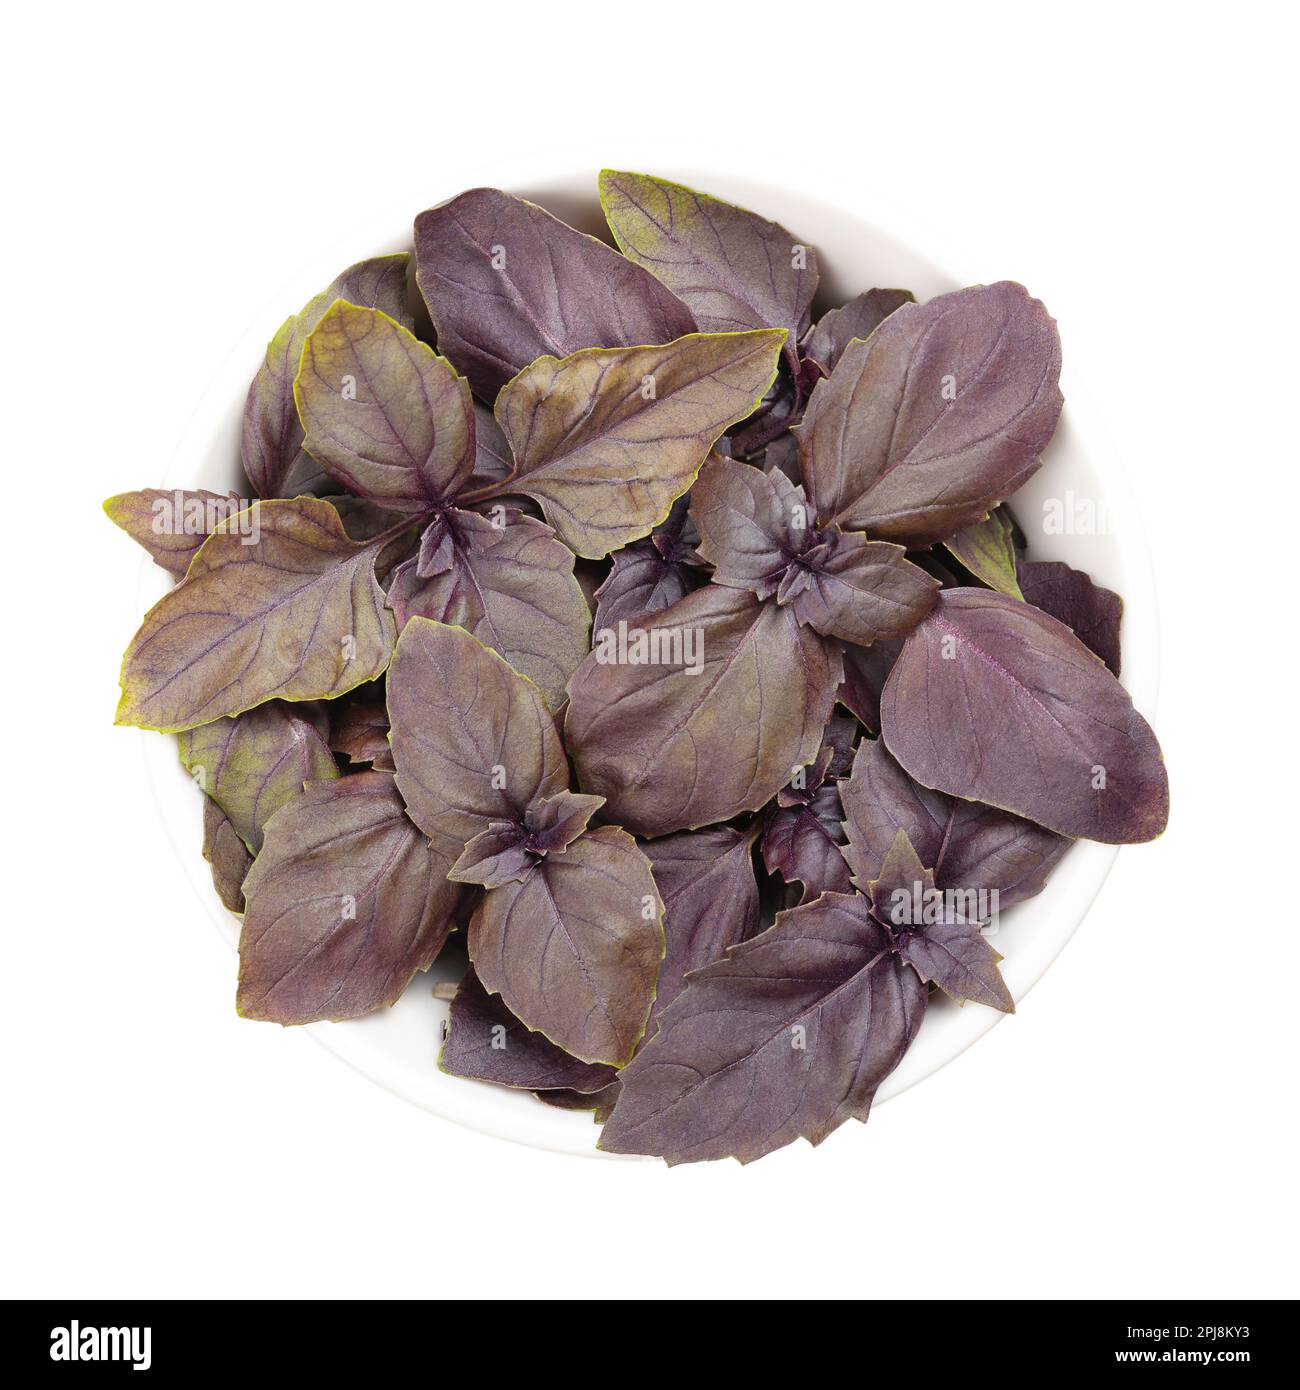 Basilic rouge, feuilles fraîches dans un bol blanc. Ocimum basilicum purpurascens, une variante de basilic sucré, avec des feuilles rougeâtres-pourpres et une forte saveur. Banque D'Images